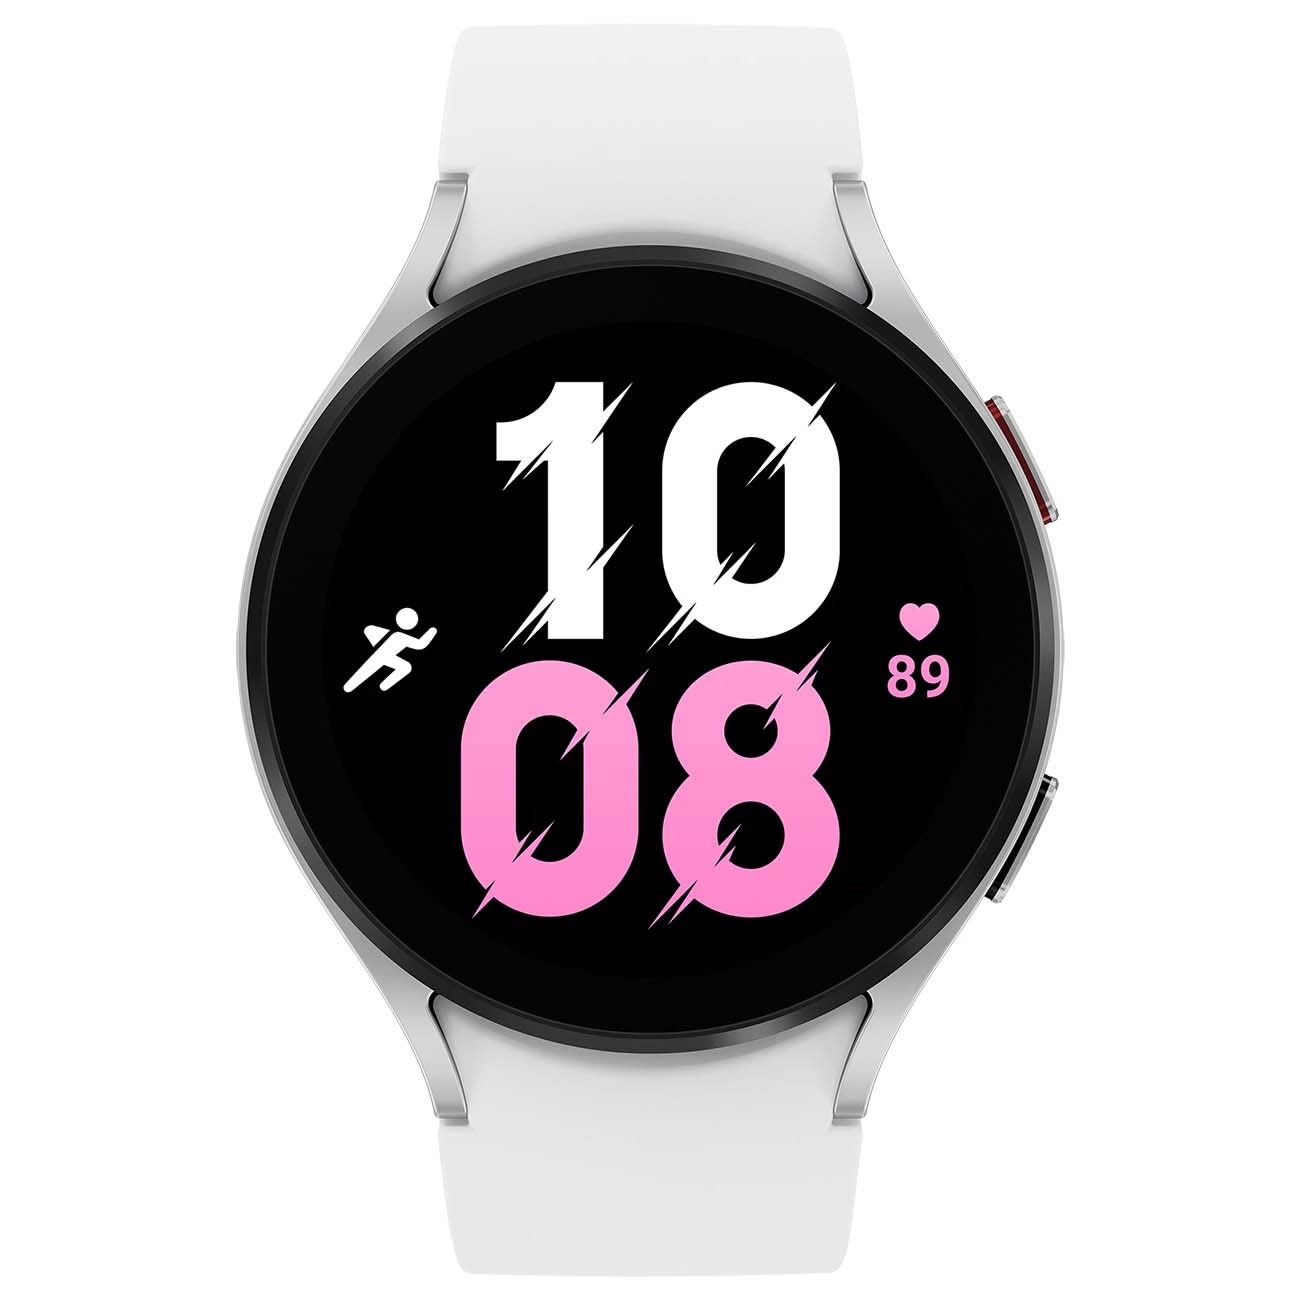 Купить смарт-часы samsung galaxy watch5 44mm silver/white Смарт-часы в официальном магазине Apple, Samsung, Xiaomi. iPixel.ru Купить, заказ, кредит, рассрочка, отзывы,  характеристики, цена,  фотографии, в подарок.